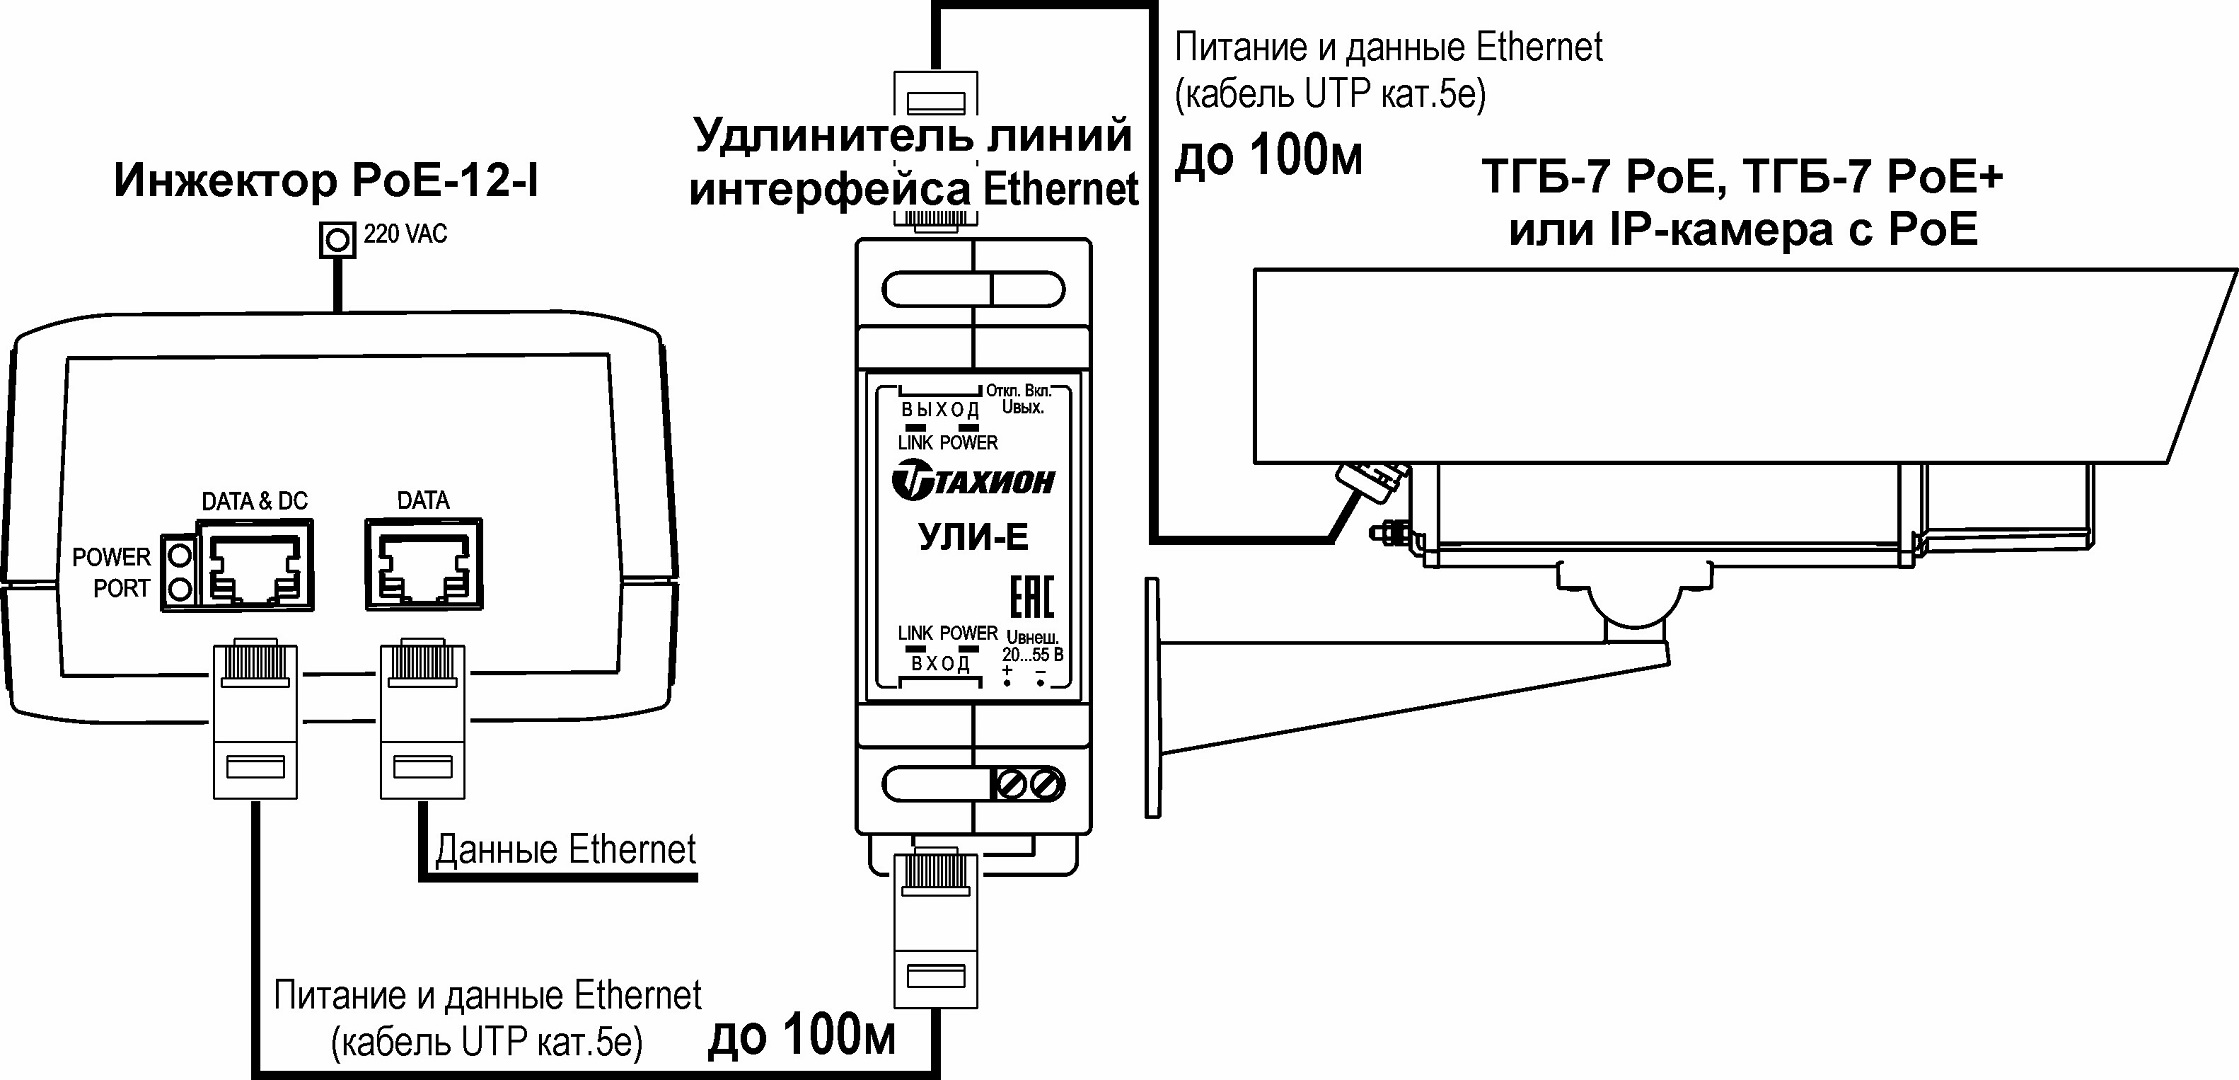 Пример удлинения линии связи с УЛИ-Е